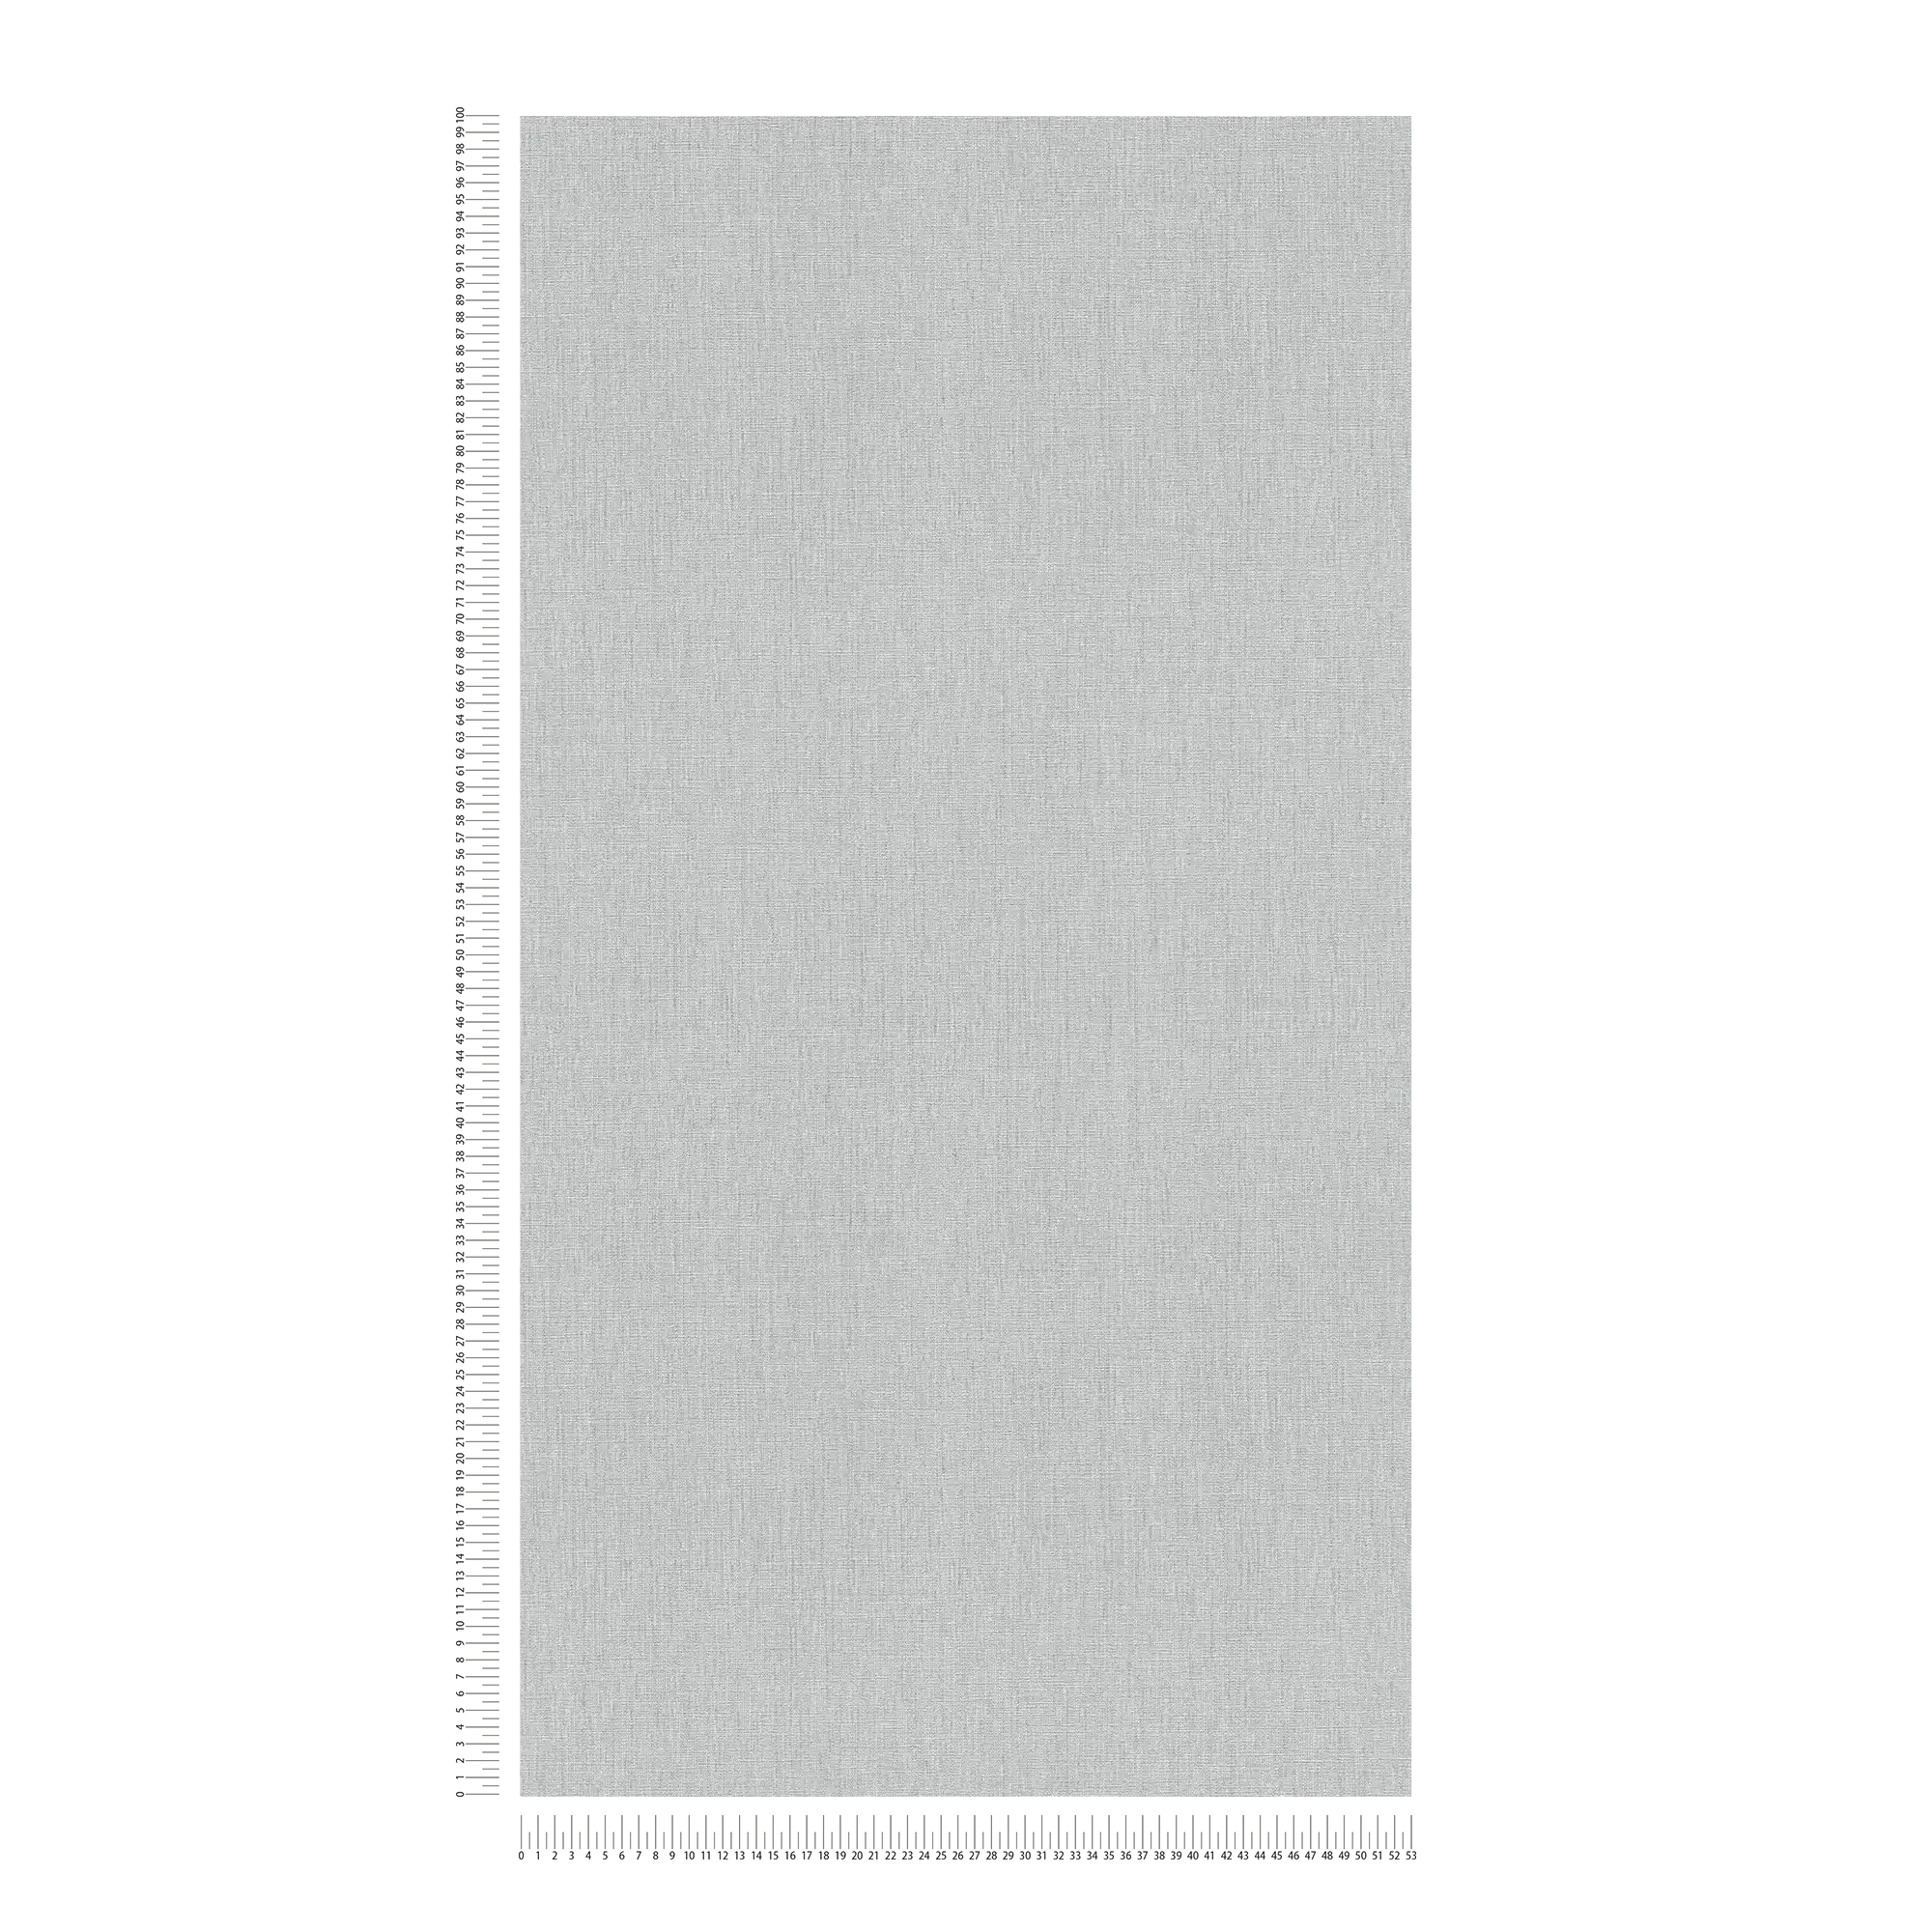             Carta da parati unitaria leggermente strutturata in una tonalità semplice - grigio
        